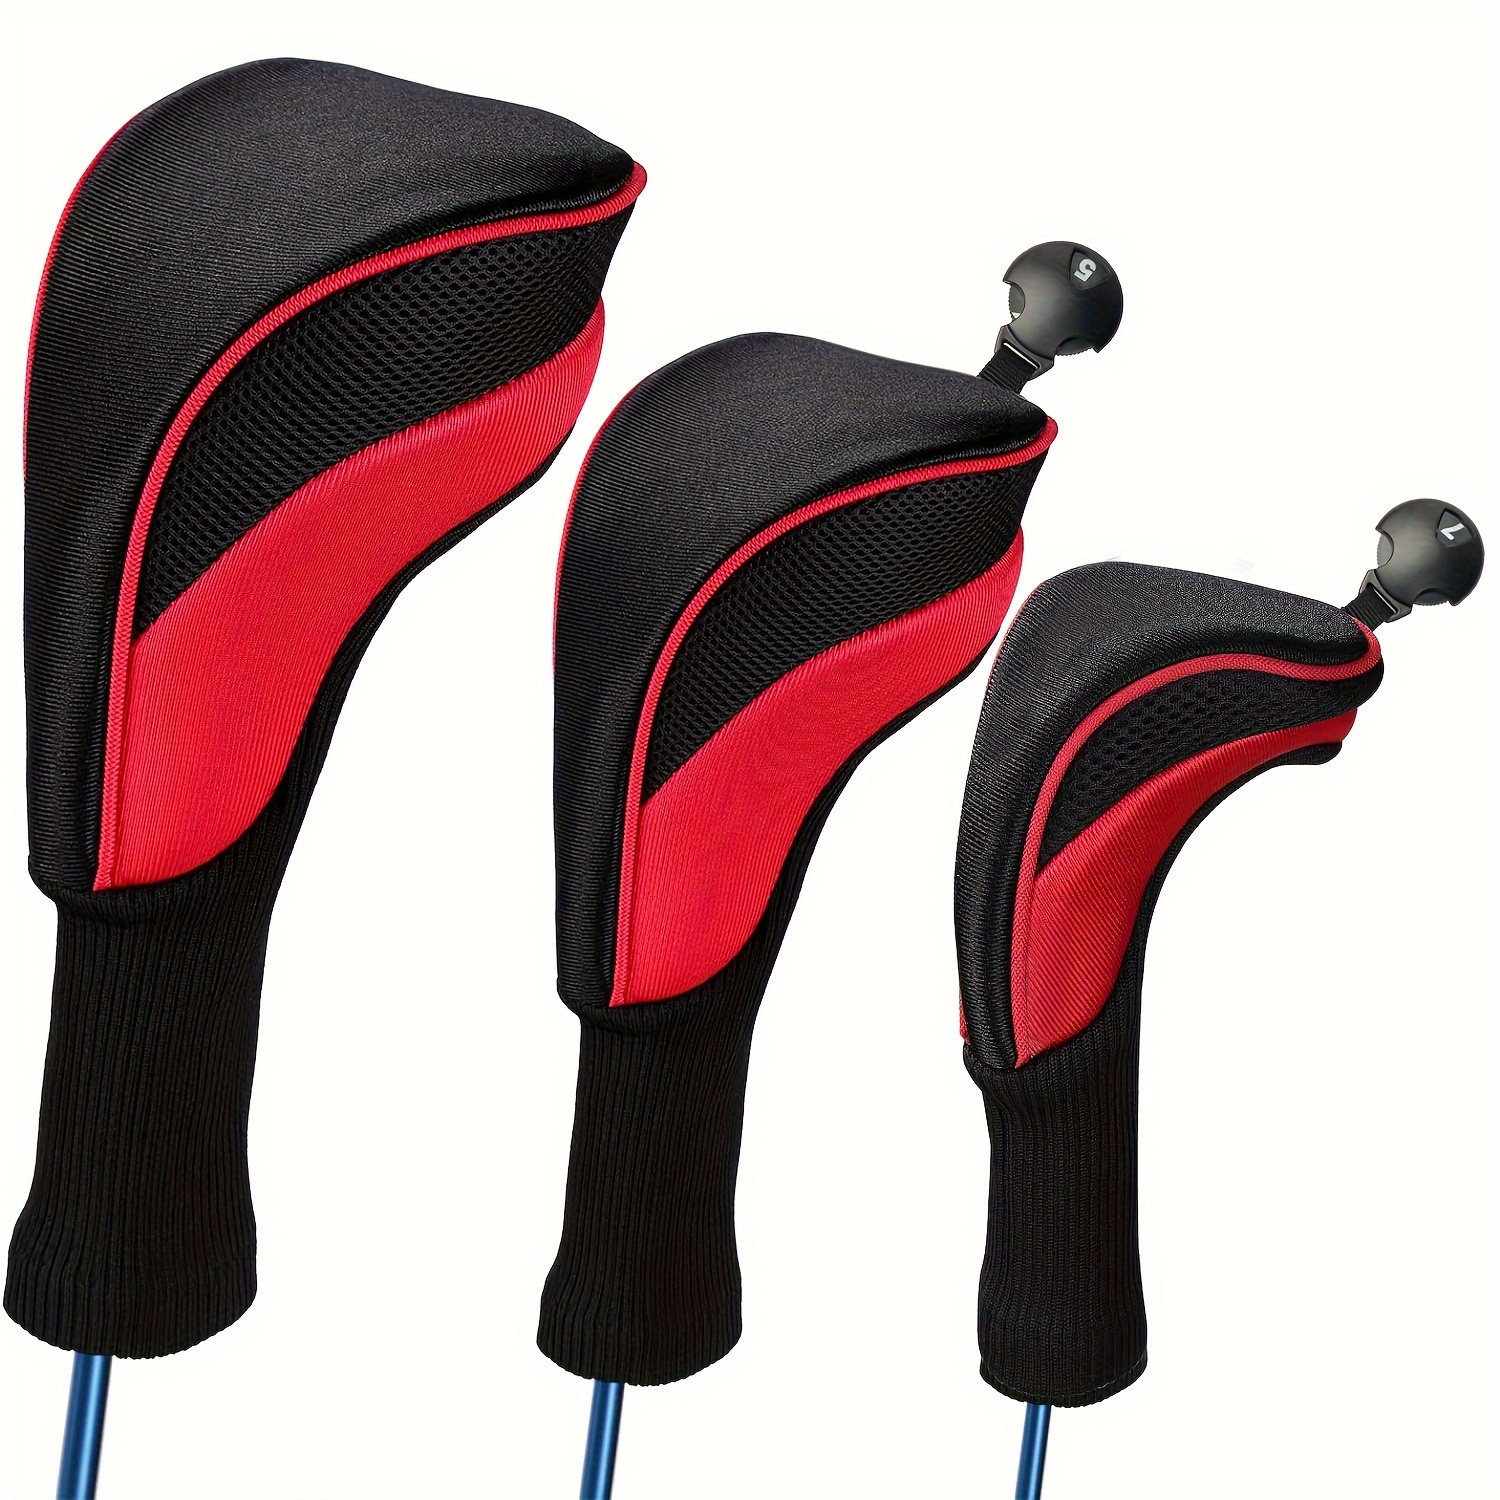 

Ensemble de 3 housses de tête de golf avec étiquettes interchangeables, adaptées aux clubs de fairway et de driver, accessoires de golf